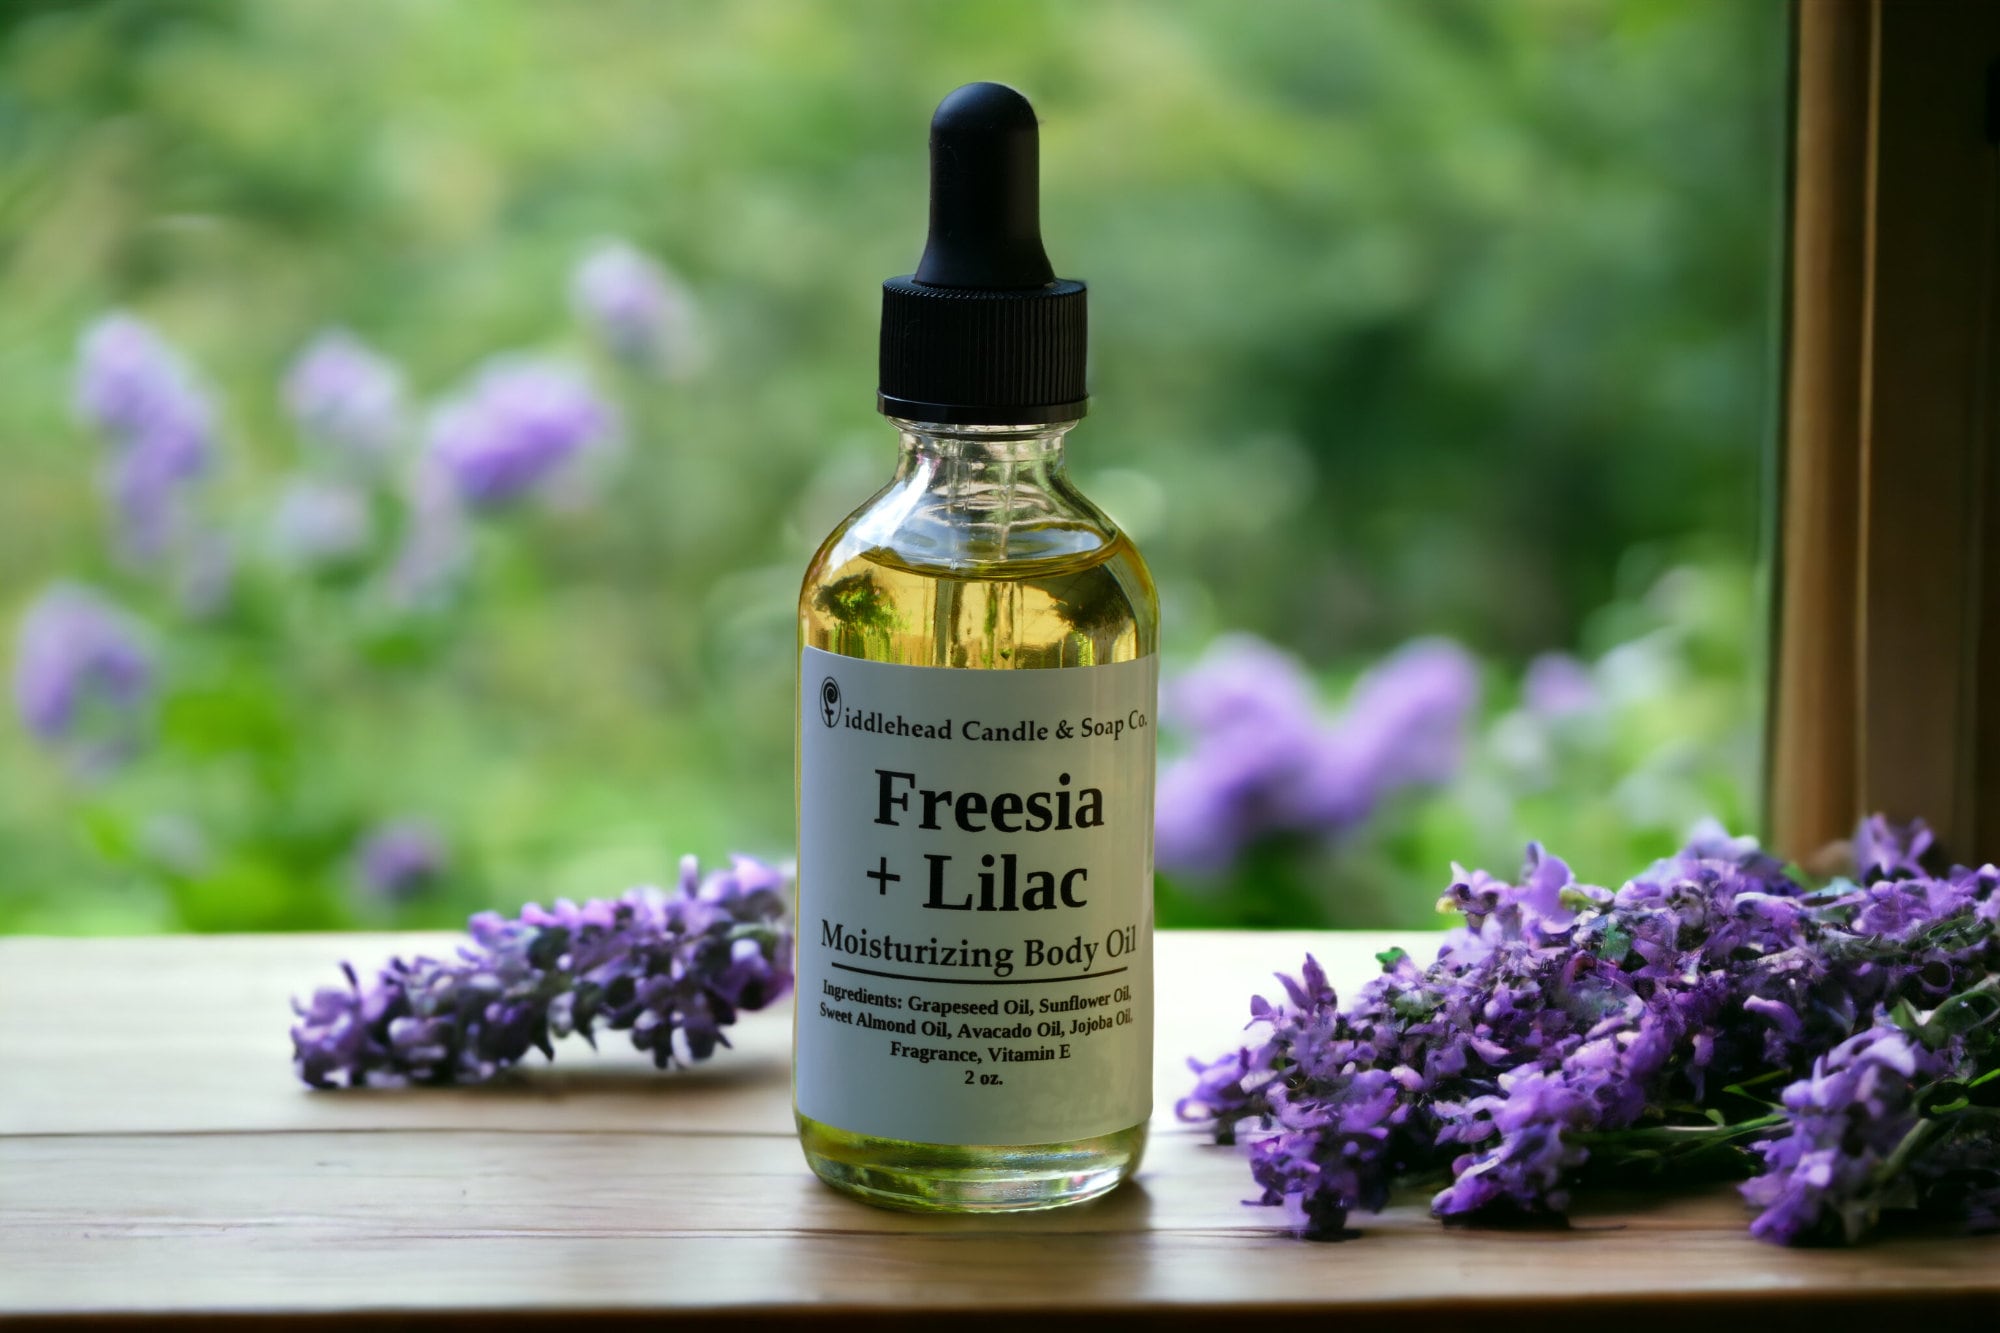 Freesia Lilac Body Oil Natural Body Oil Massage Oil 